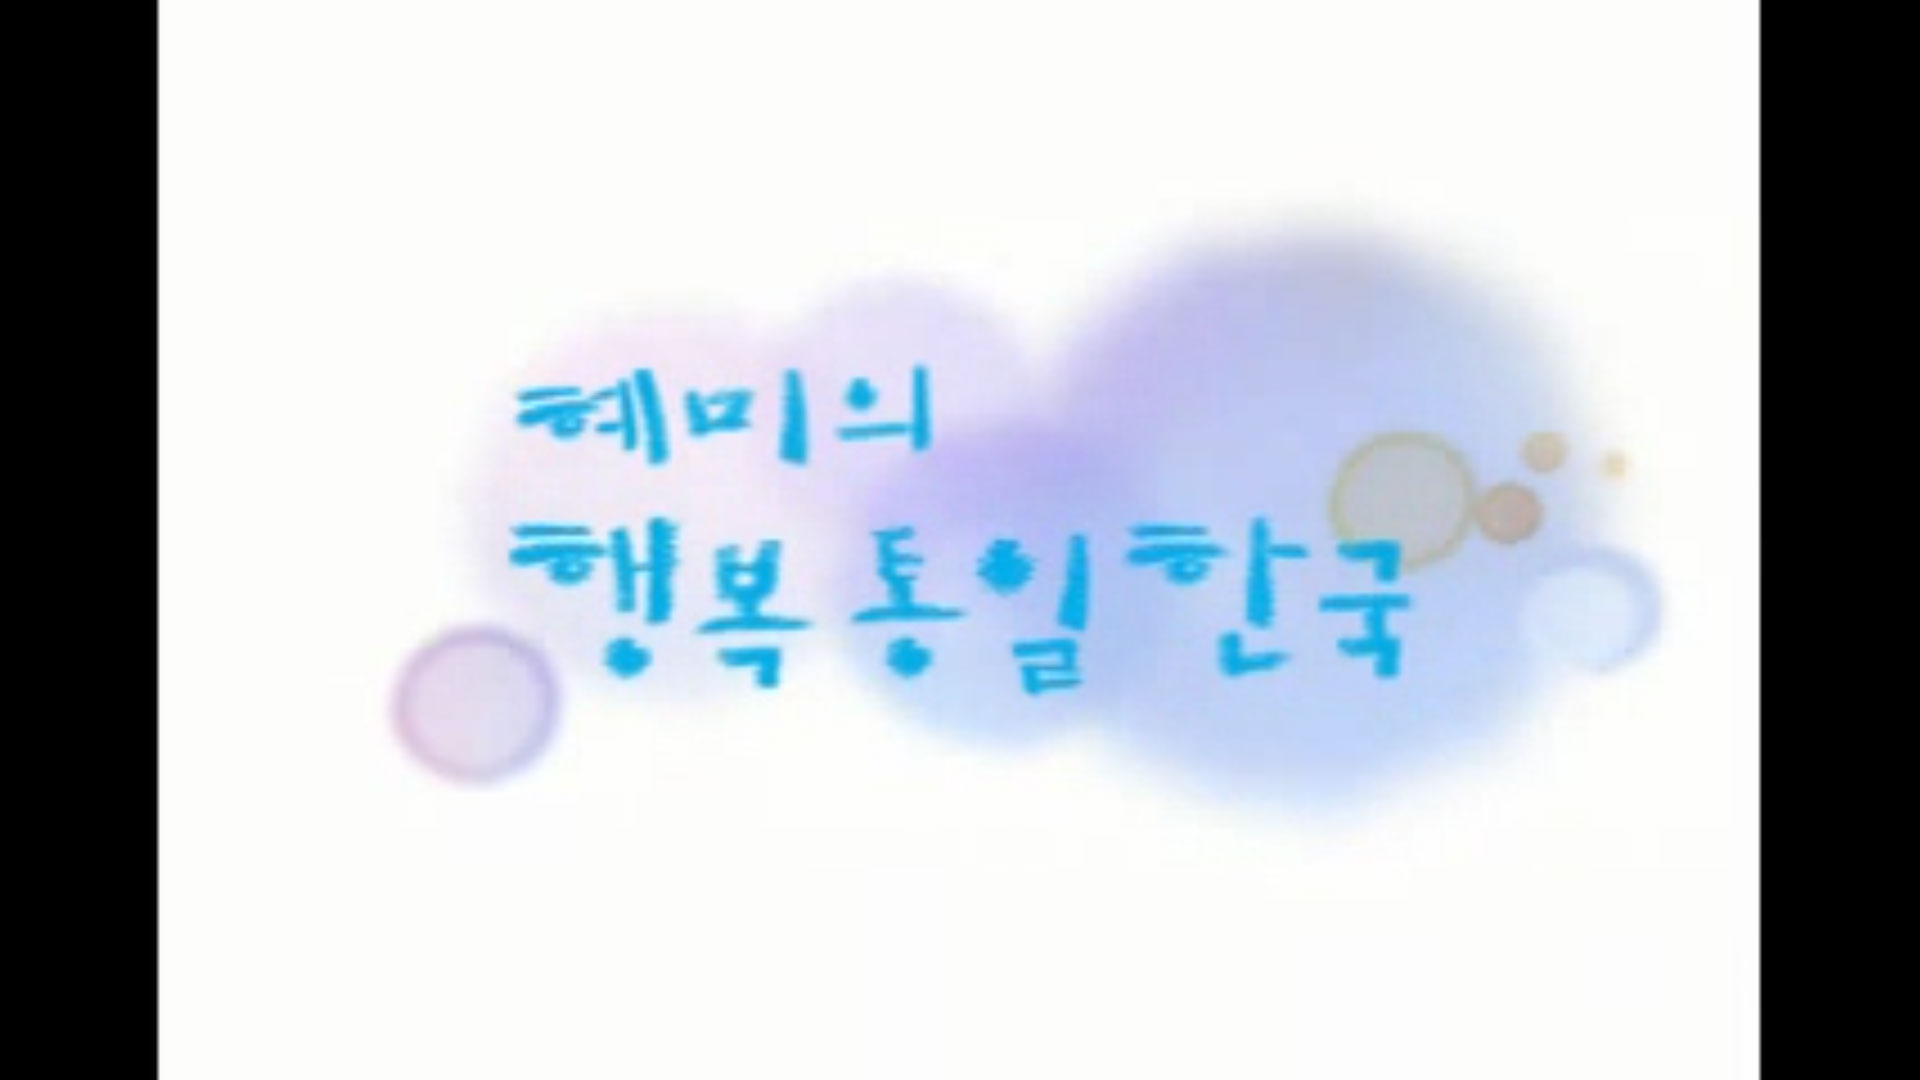 [애니메이션] 혜미의 행복통일한국(청각장애인용 자막영상)